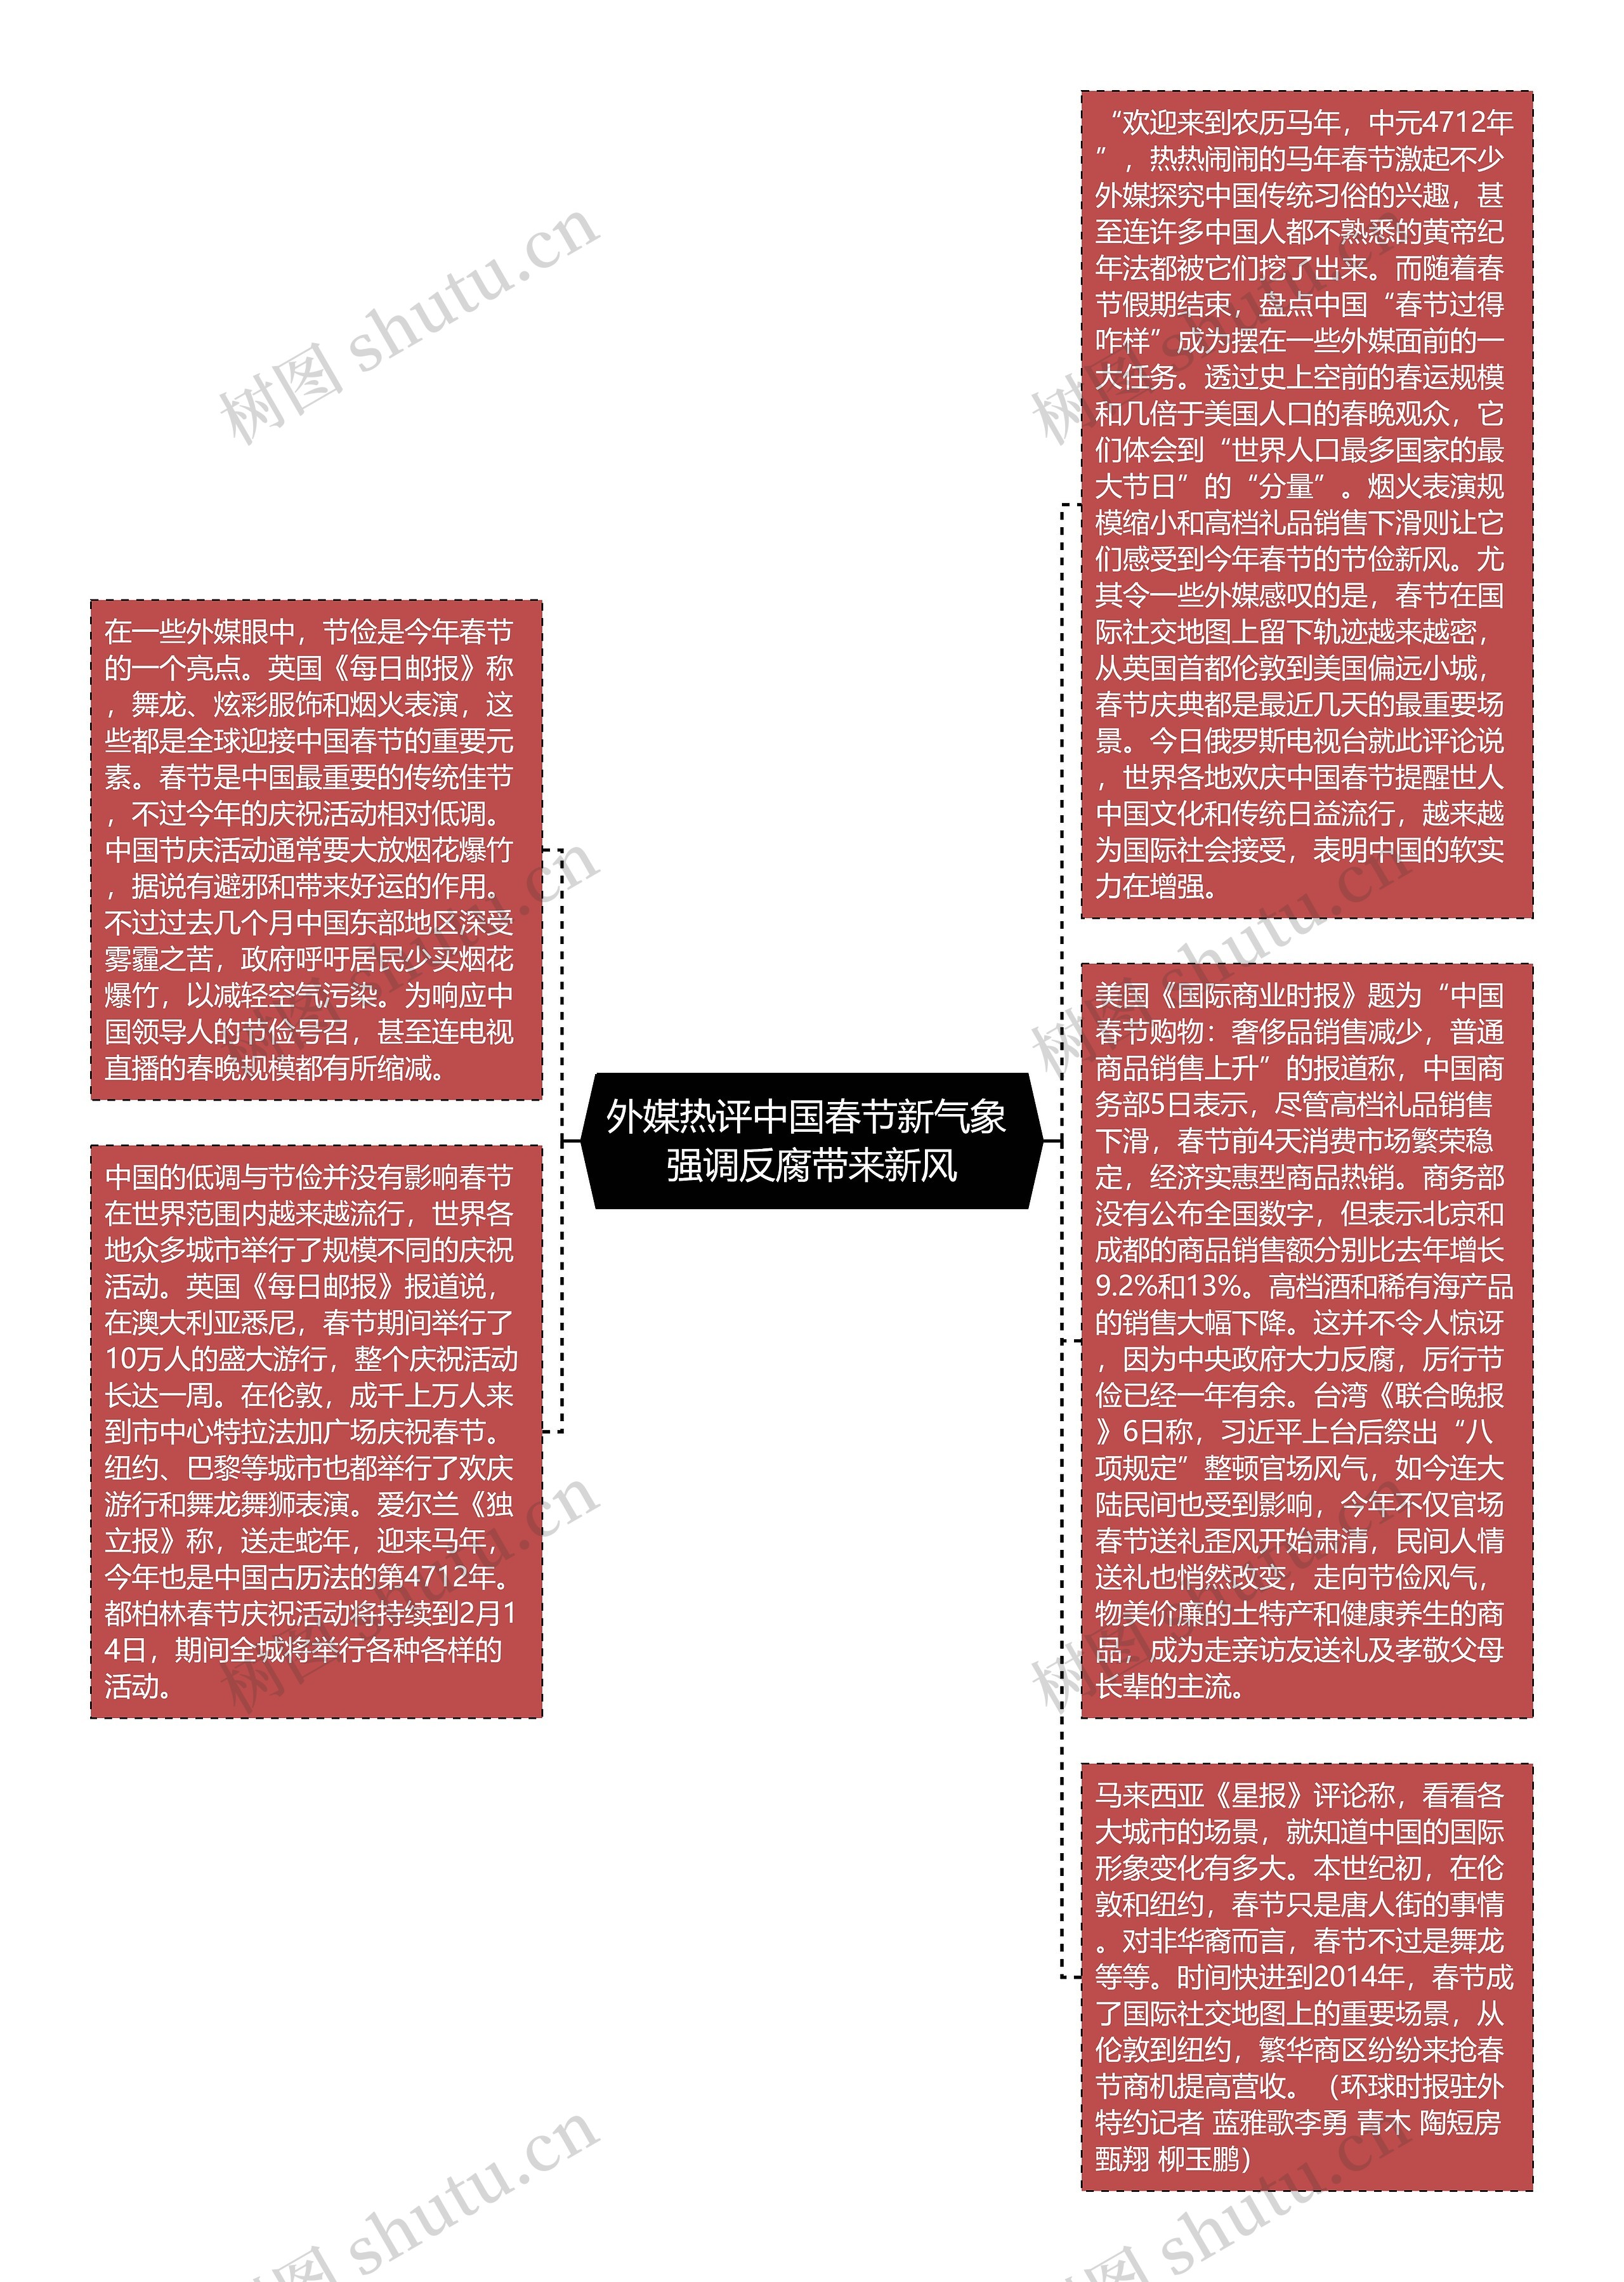 外媒热评中国春节新气象 强调反腐带来新风思维导图